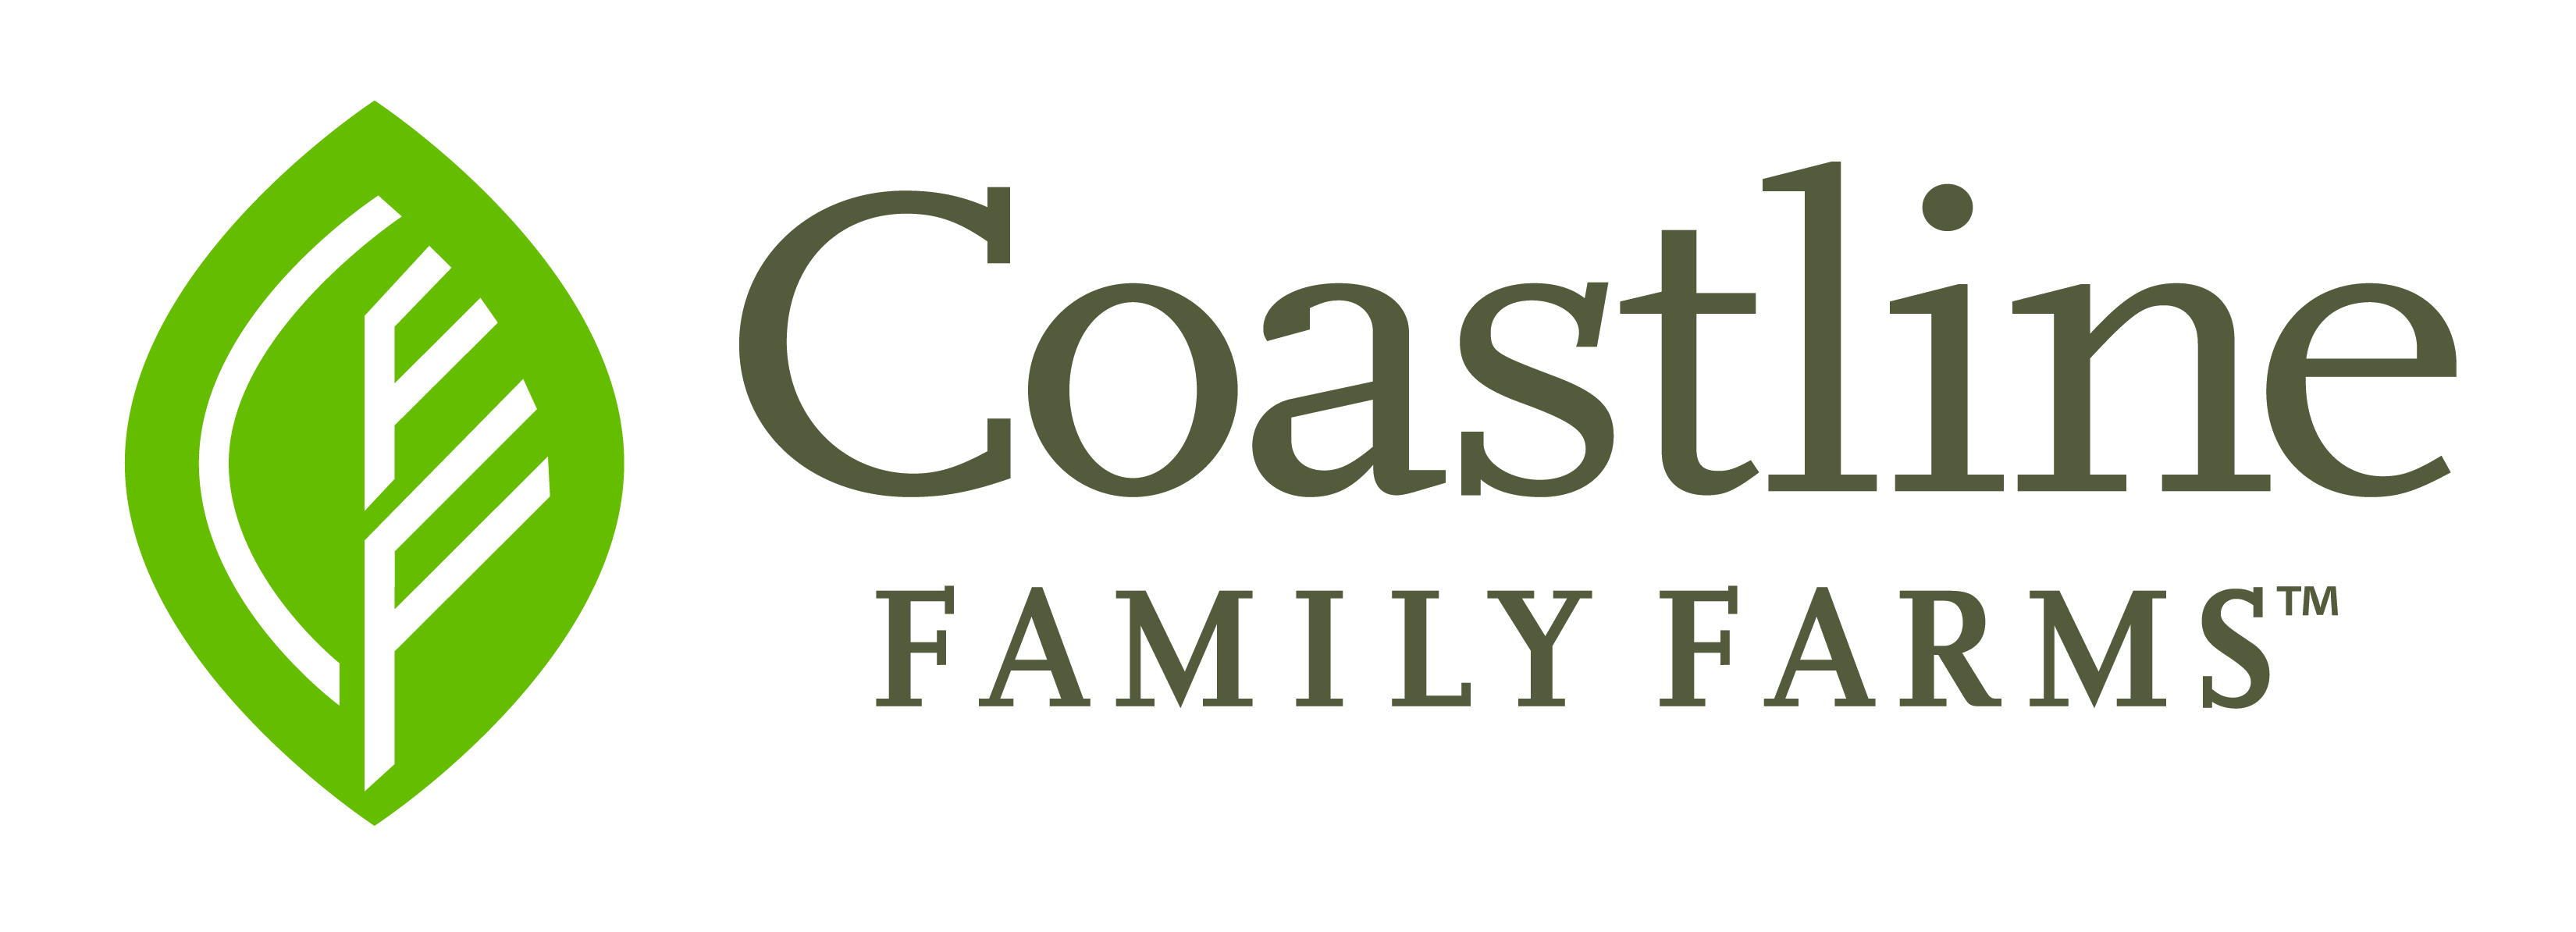 Coastline Farms logo